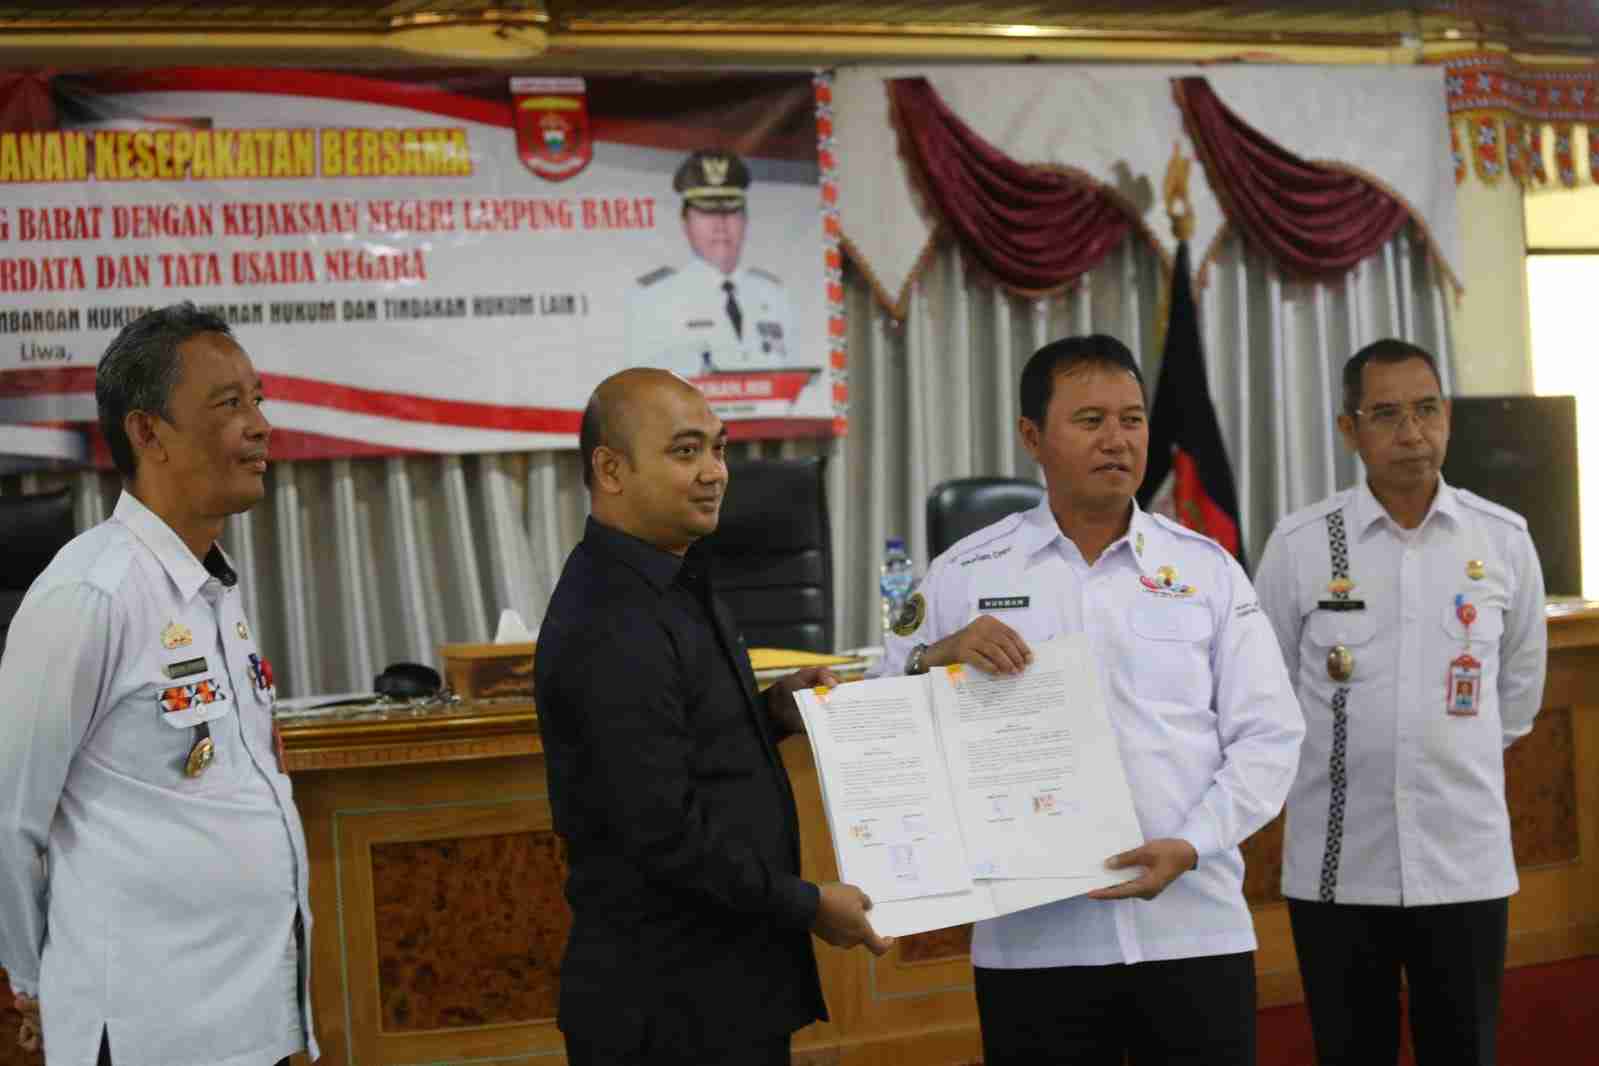 Pj Bupati Drs. H. Nukman dan Kajari Deddy Sutendy Menandatangani Kesepakatan Bersama